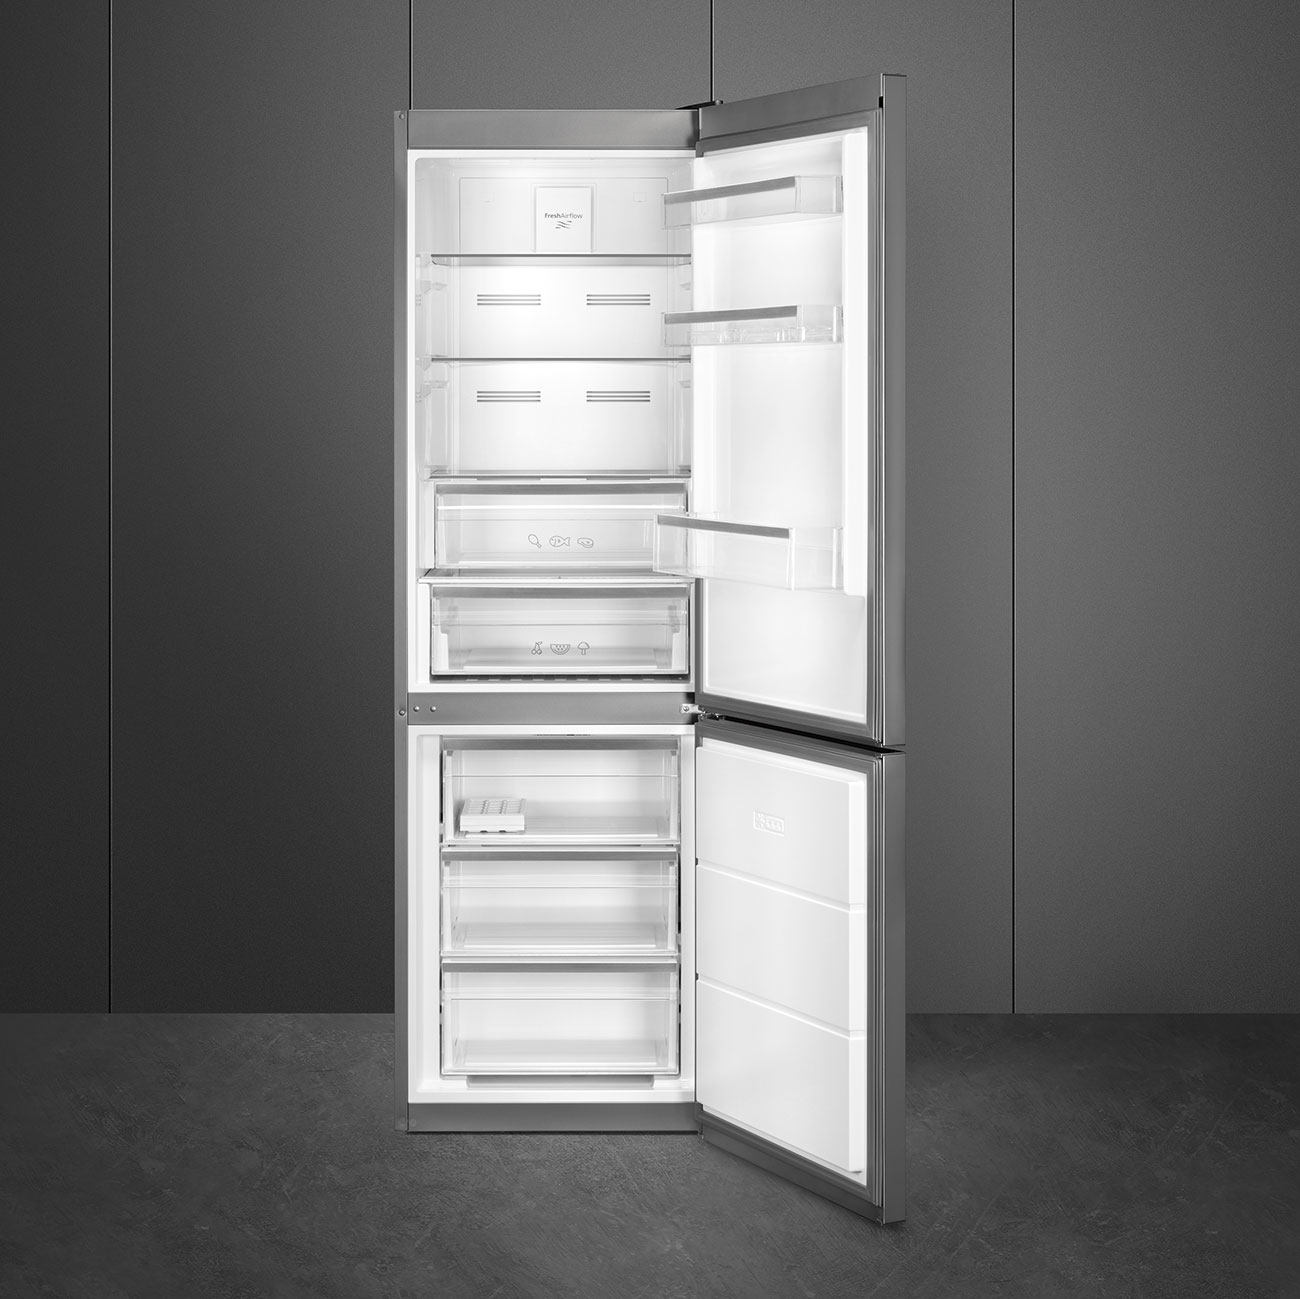 SMEG FC18EN4AX Отдельностоящий холодильник, 60 см, нержавеющая сталь с обработкой против отпечатков пальцев